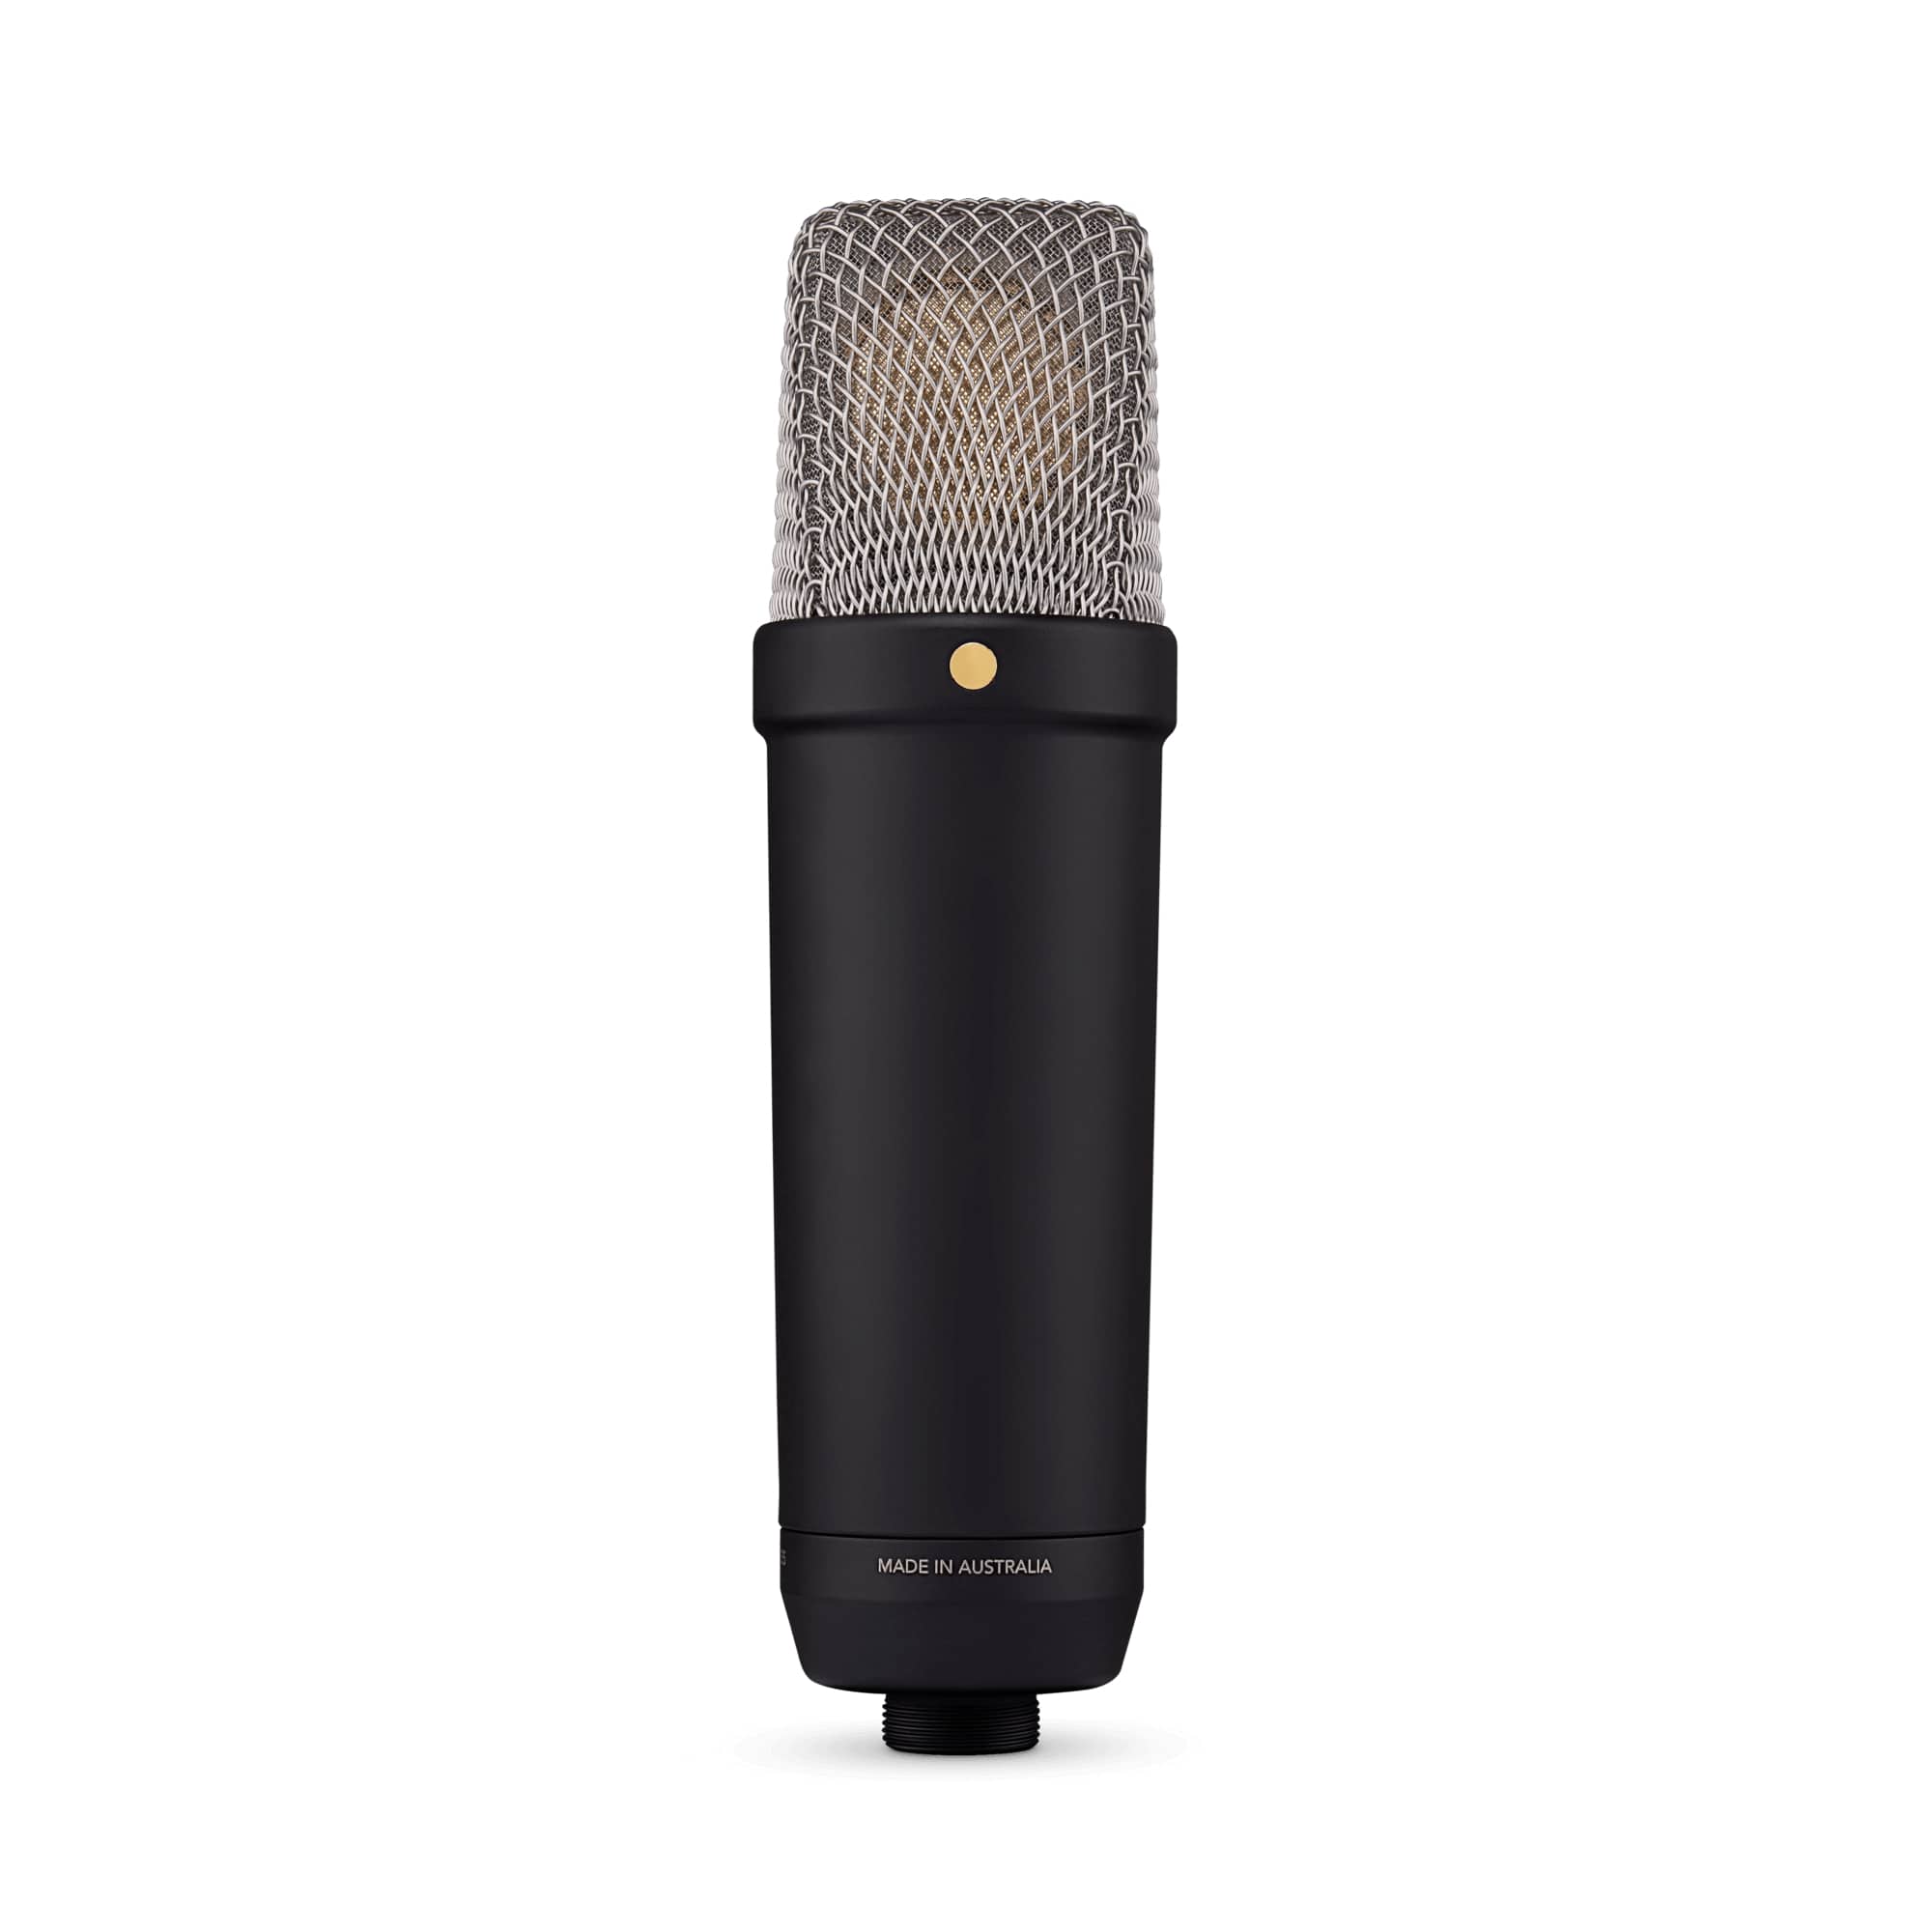 Студийные микрофоны Rode NT1 5th Generation Black студийные микрофоны leem cm 7400